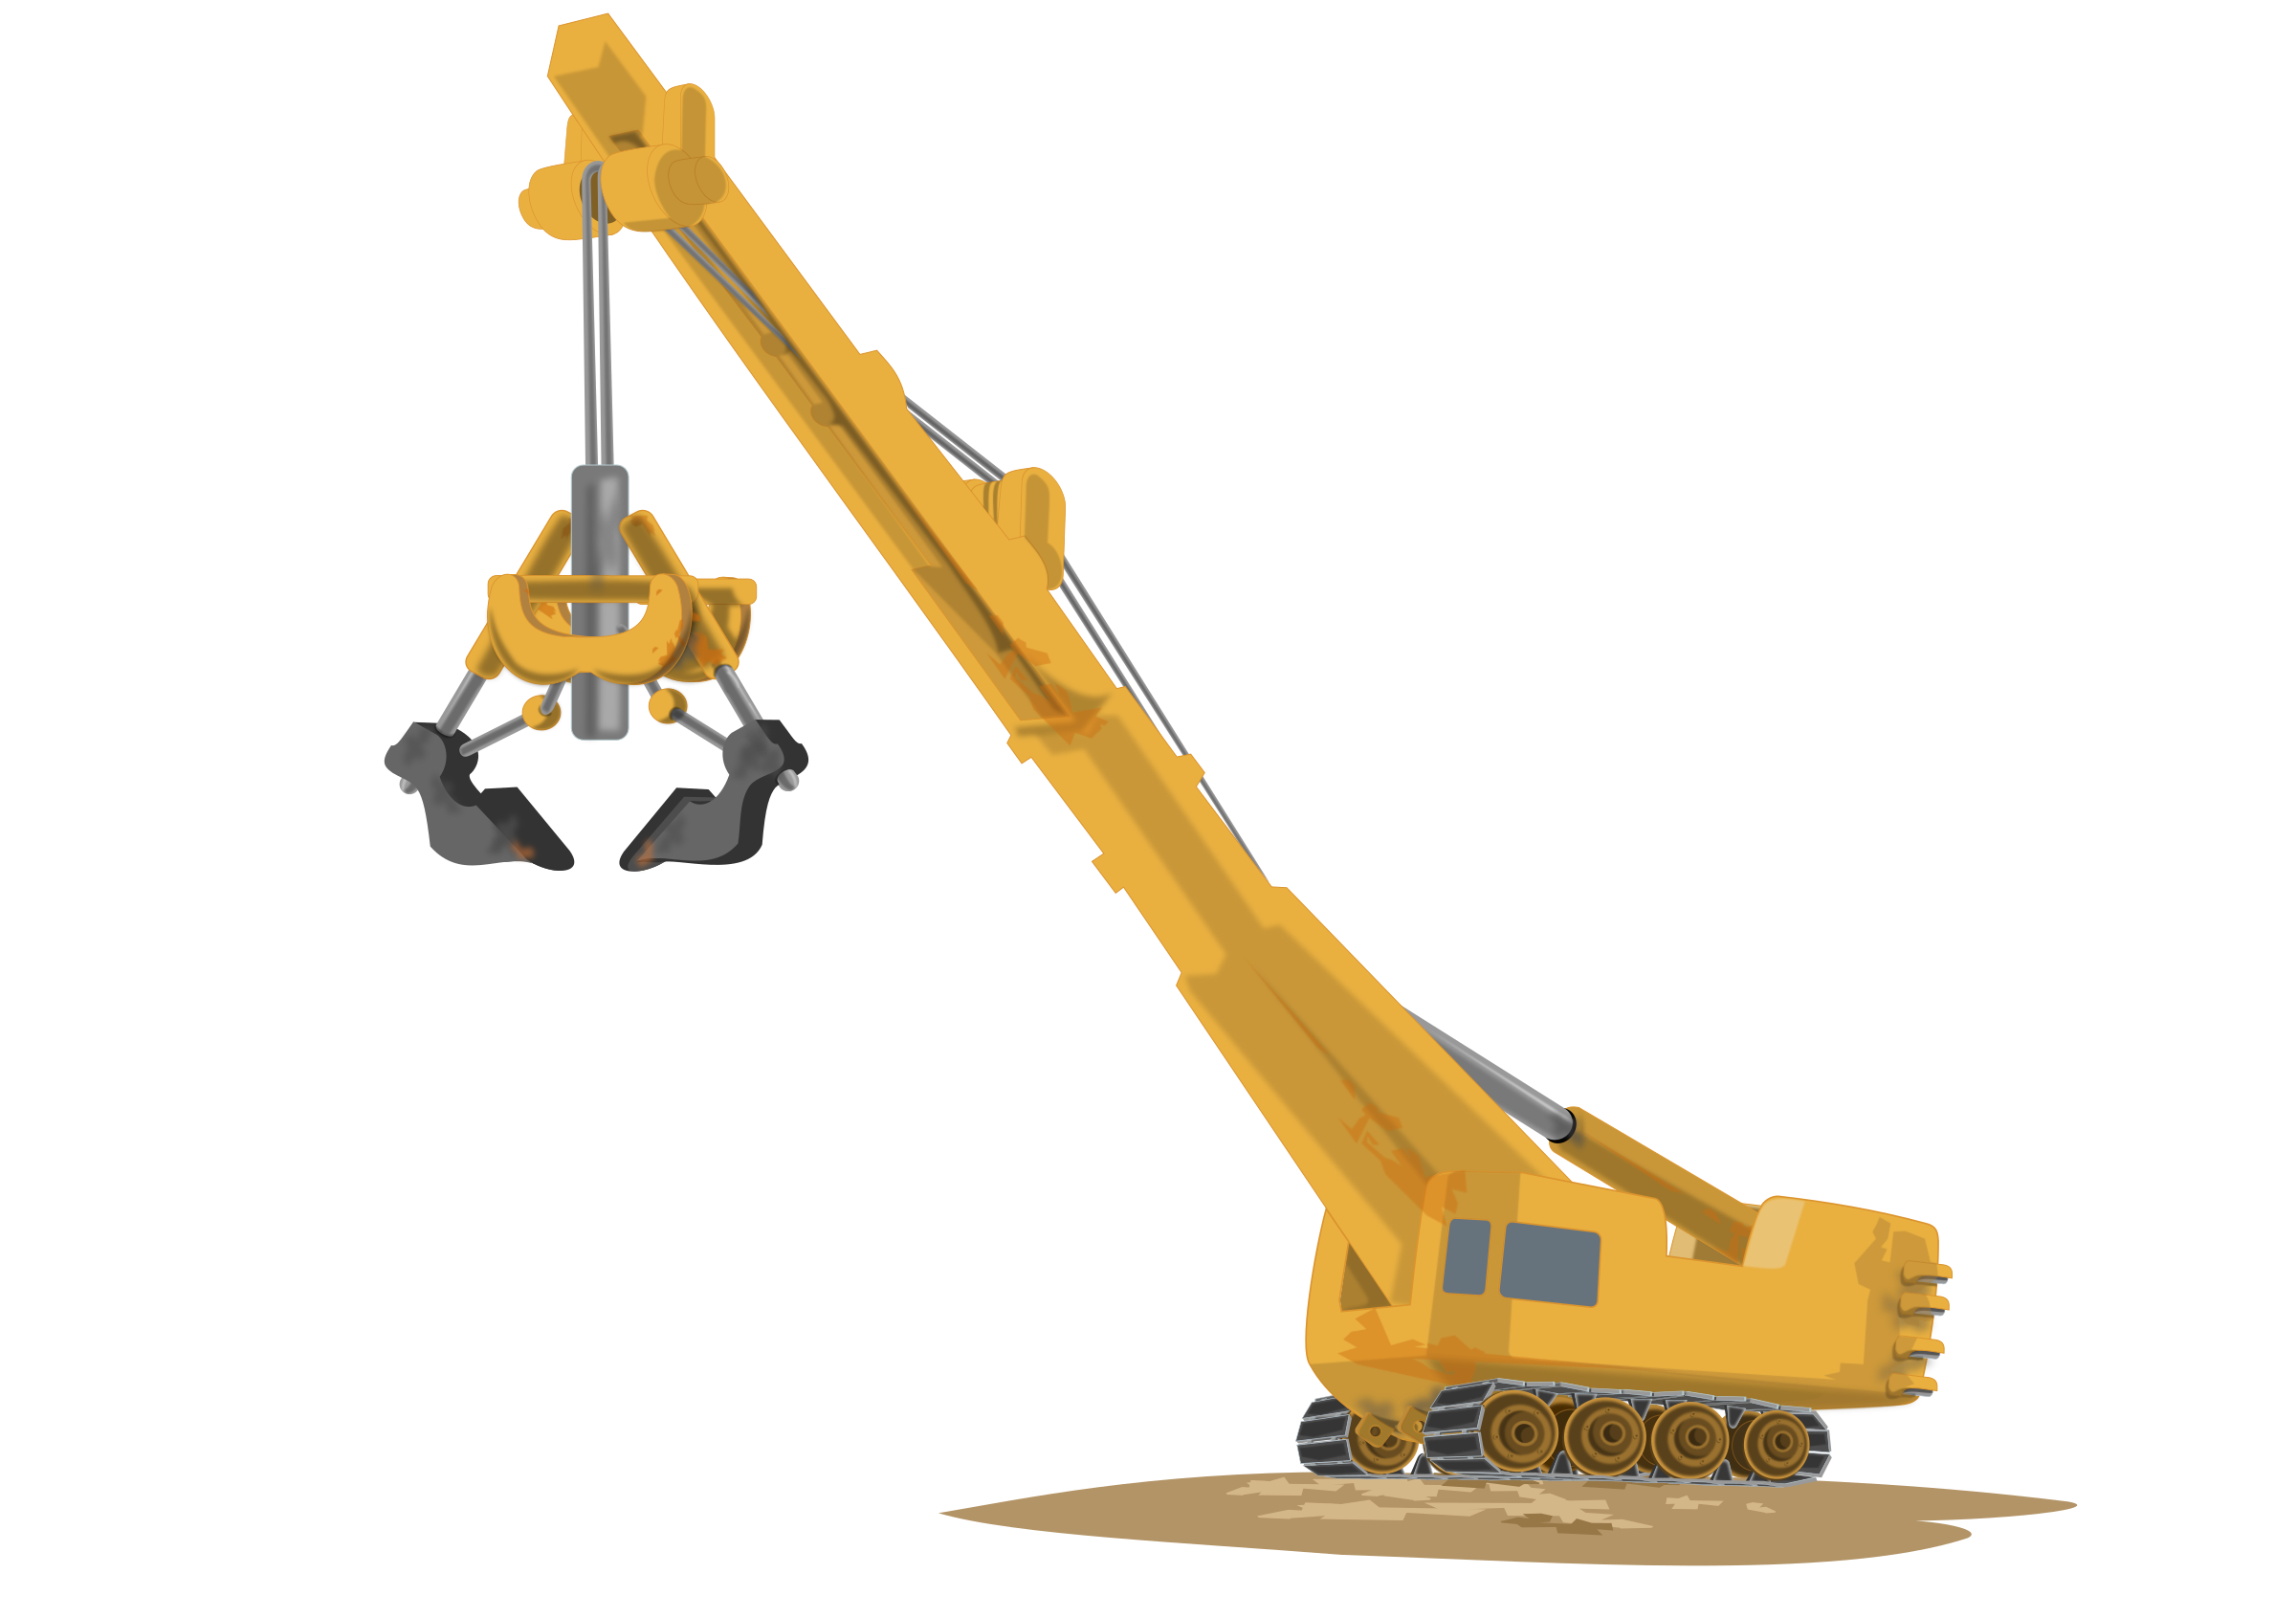 Clipart - Construction Crane